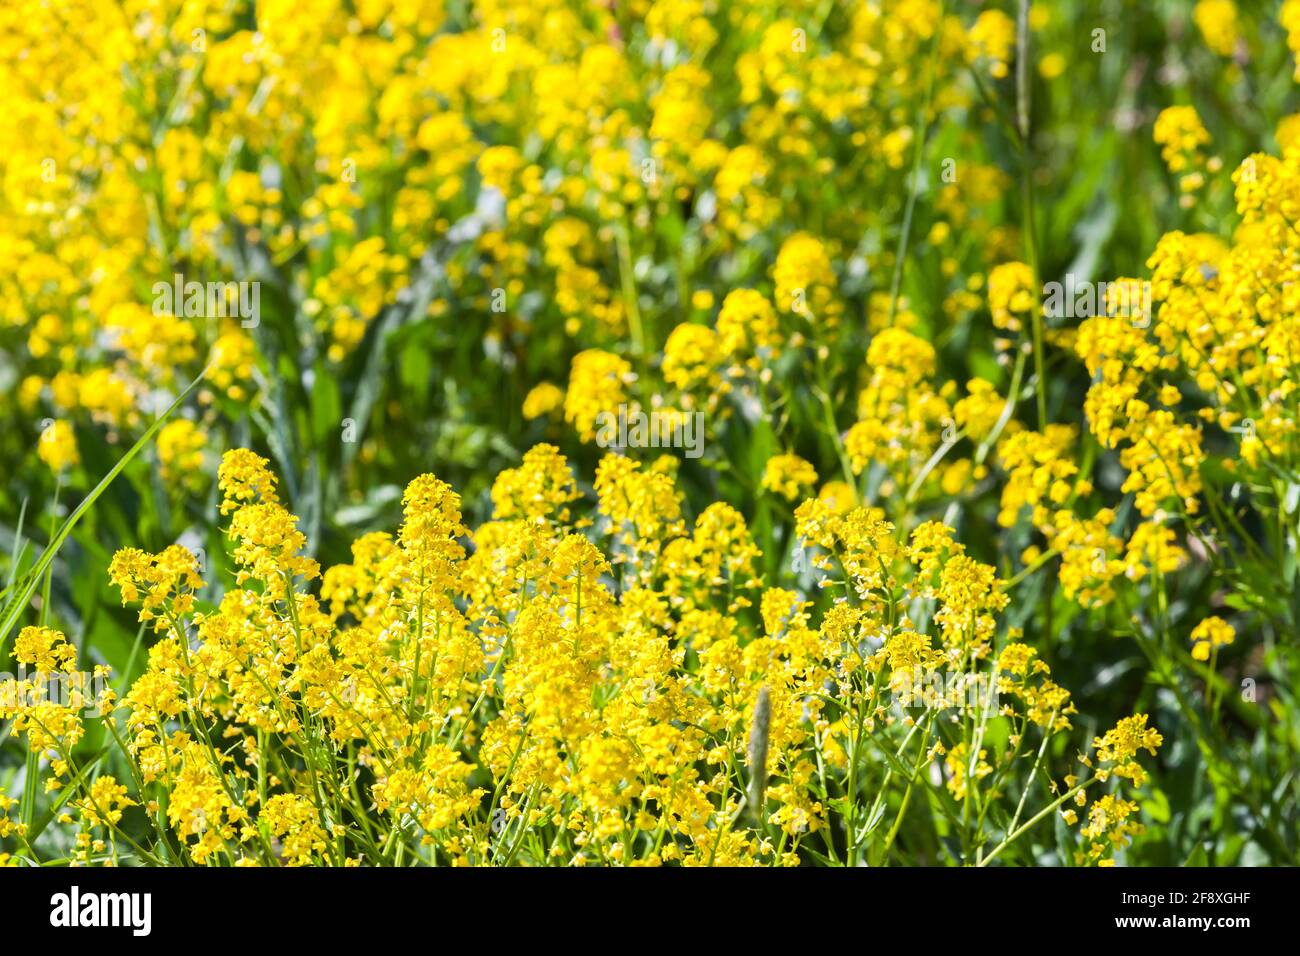 Fiore di rapa immagini e fotografie stock ad alta risoluzione - Alamy